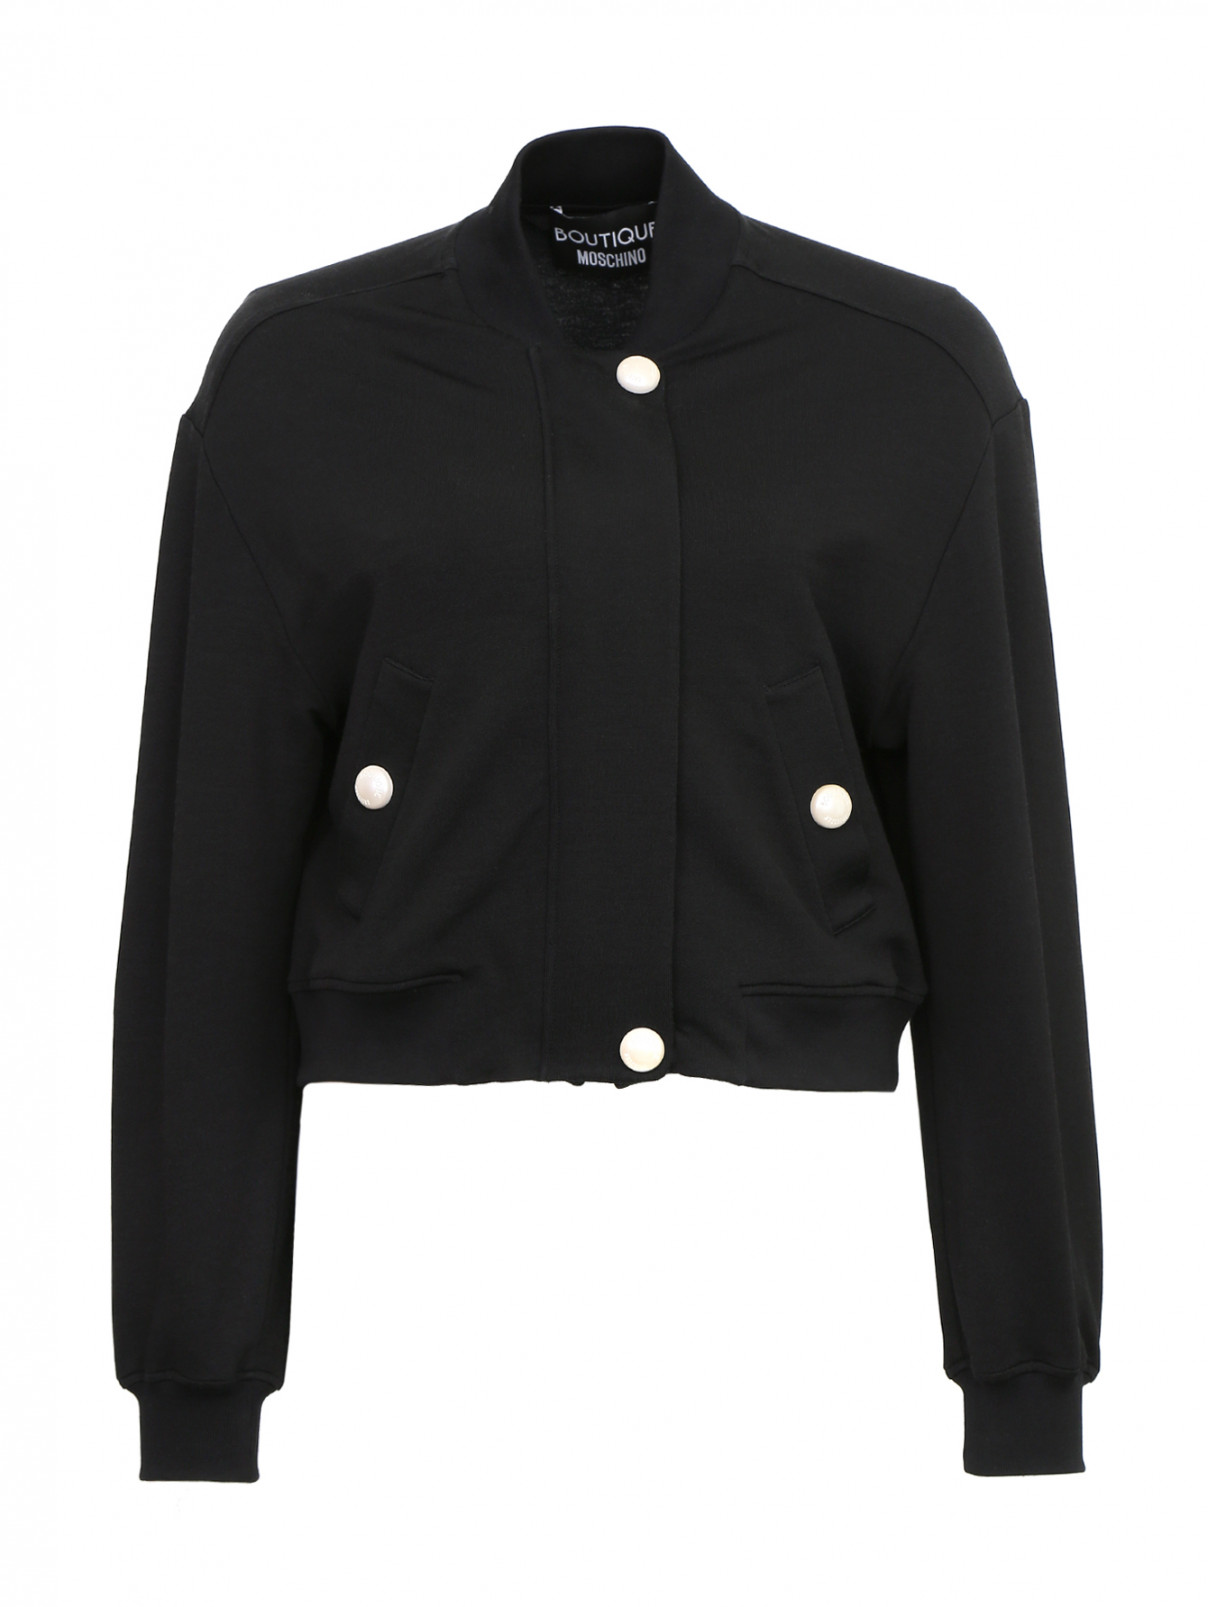 Куртка бомбер с аппликацией на спине Moschino Boutique  –  Общий вид  – Цвет:  Черный